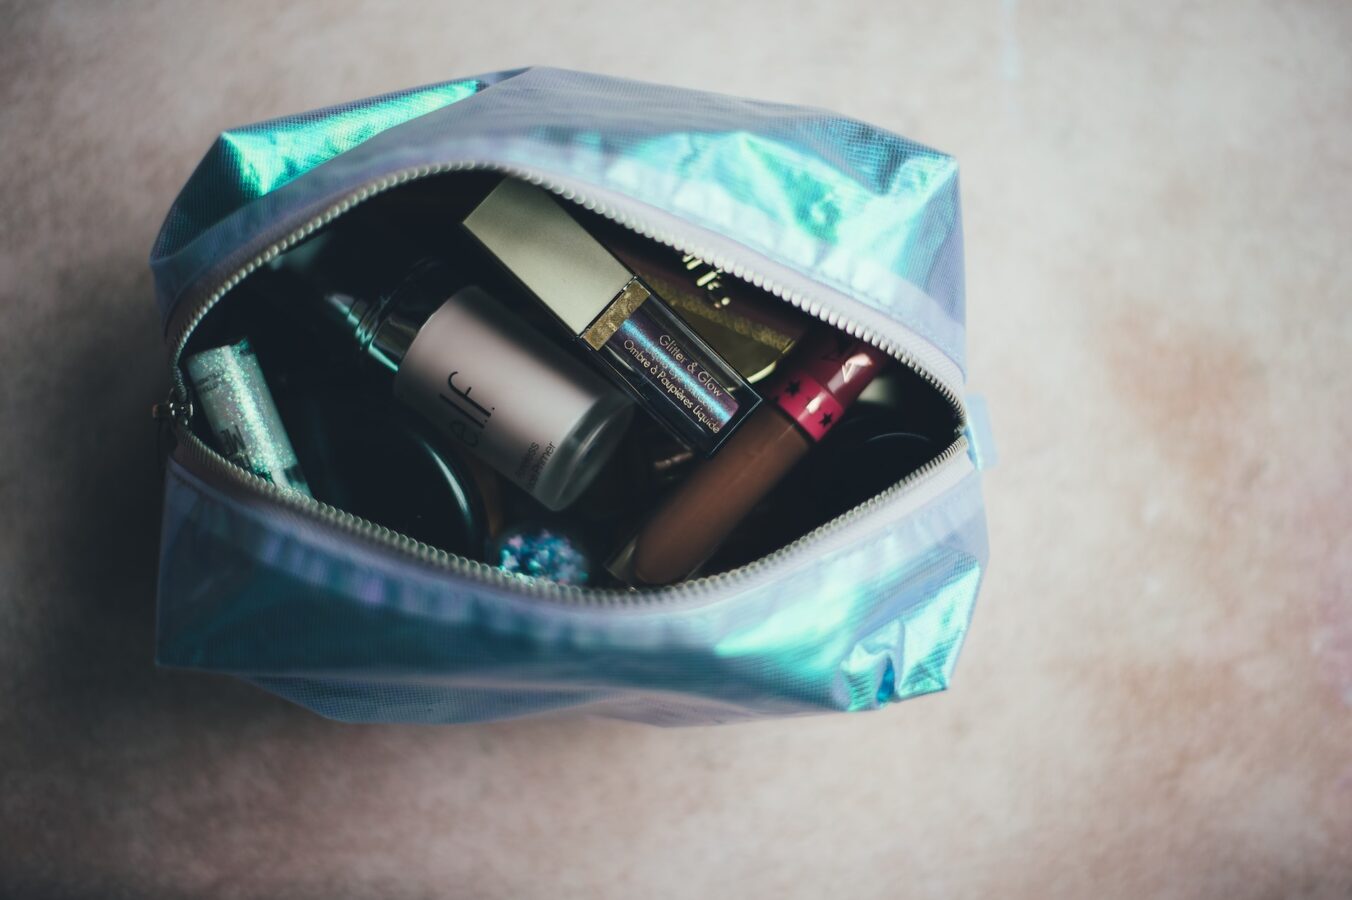 Dior Makeup Bag